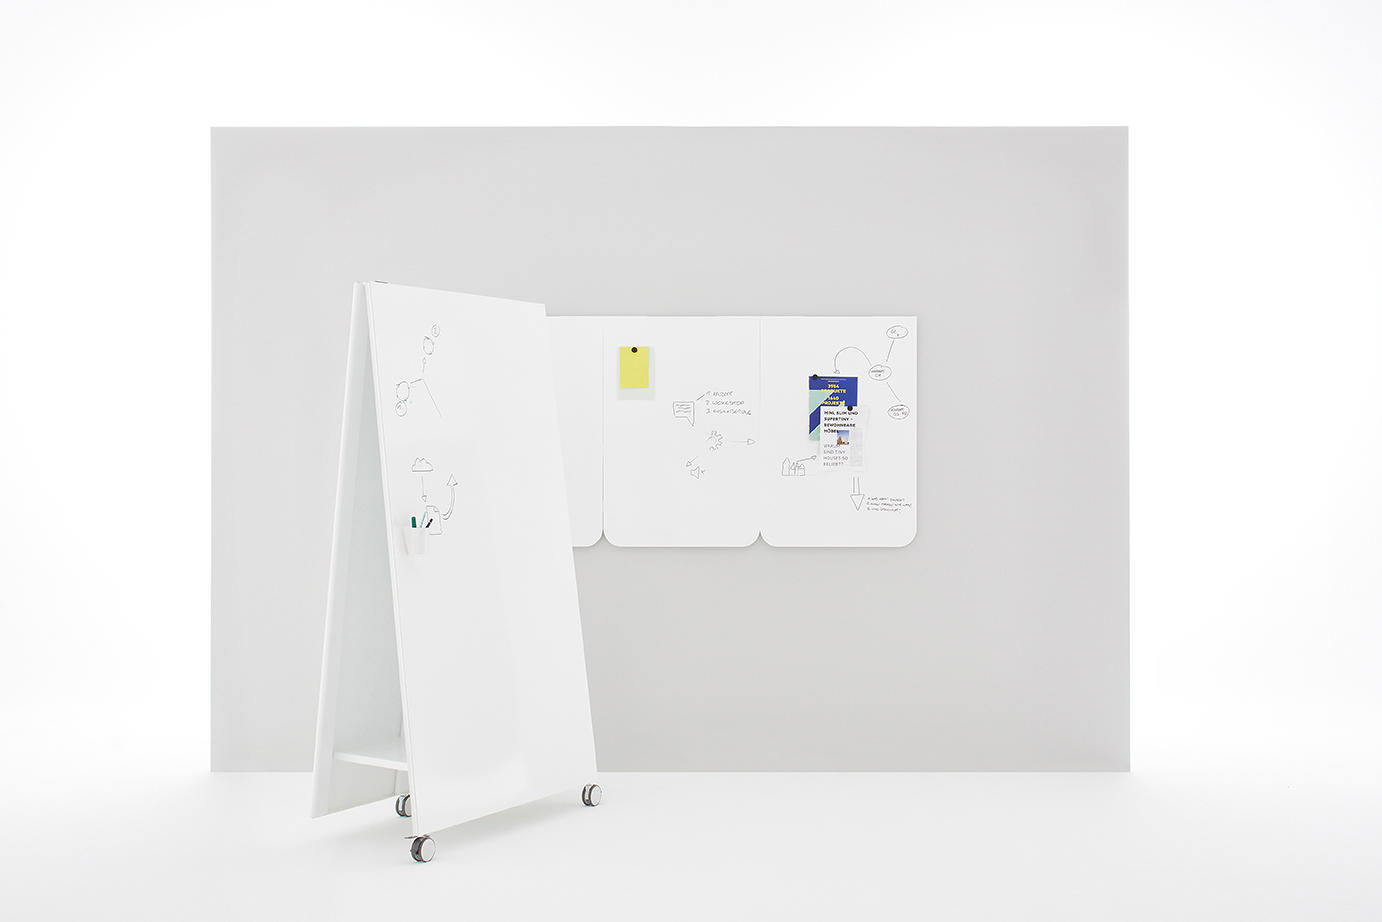 Sharewall® Spline Full Wall Magnetic Whiteboard Panel System